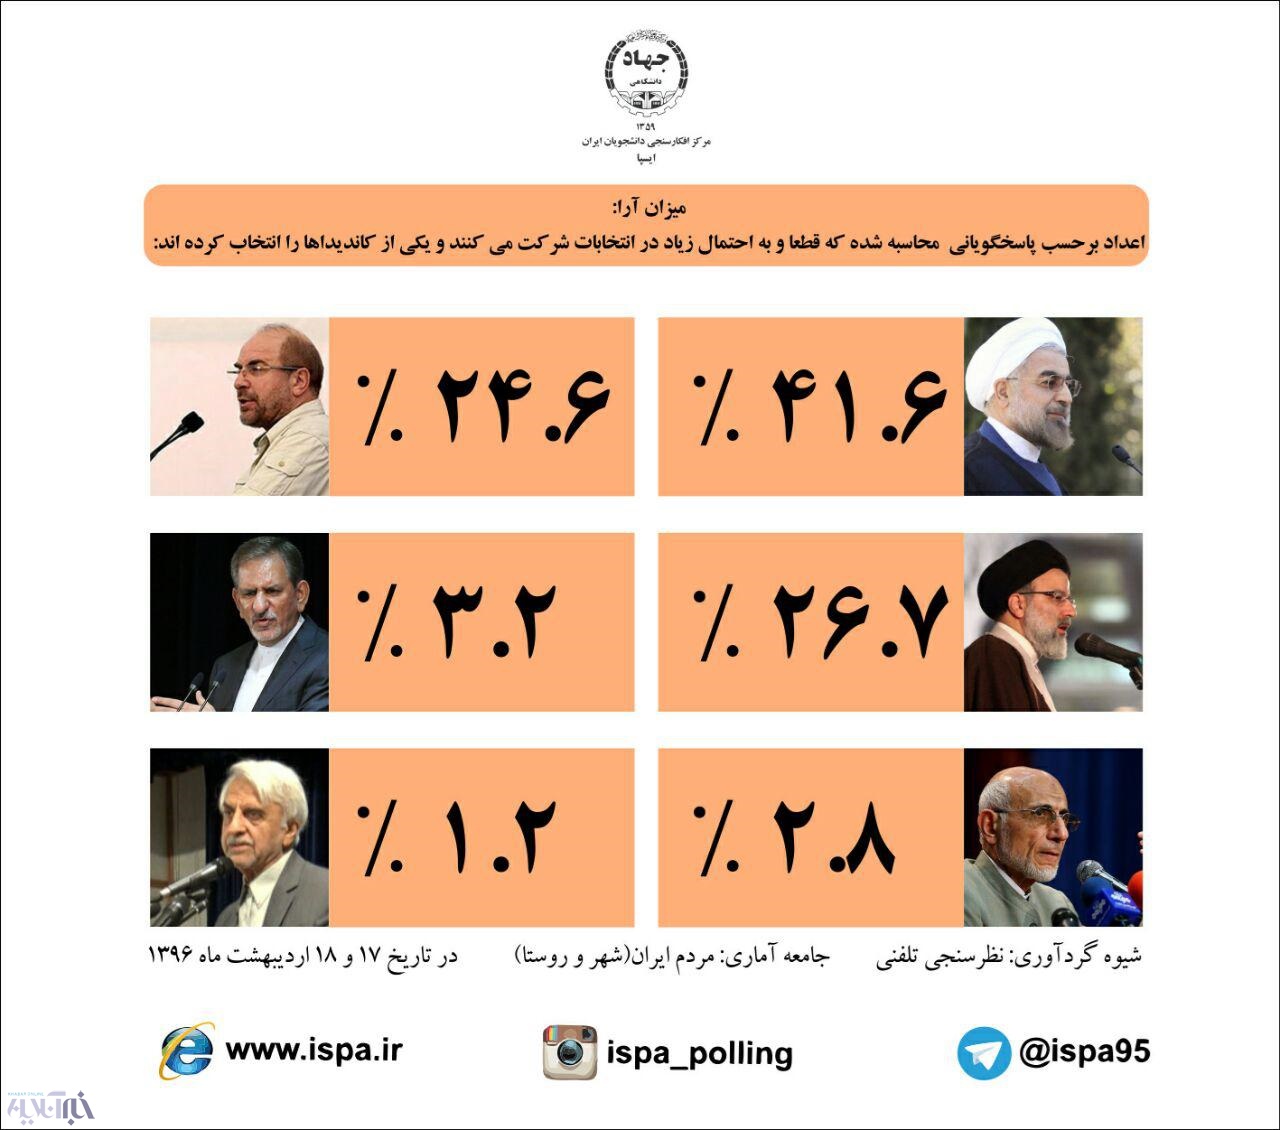 جدیدترین نظرسنجی ایسپا؛ روحانی در صدر است/رئیسی از قالیباف جلو افتاد